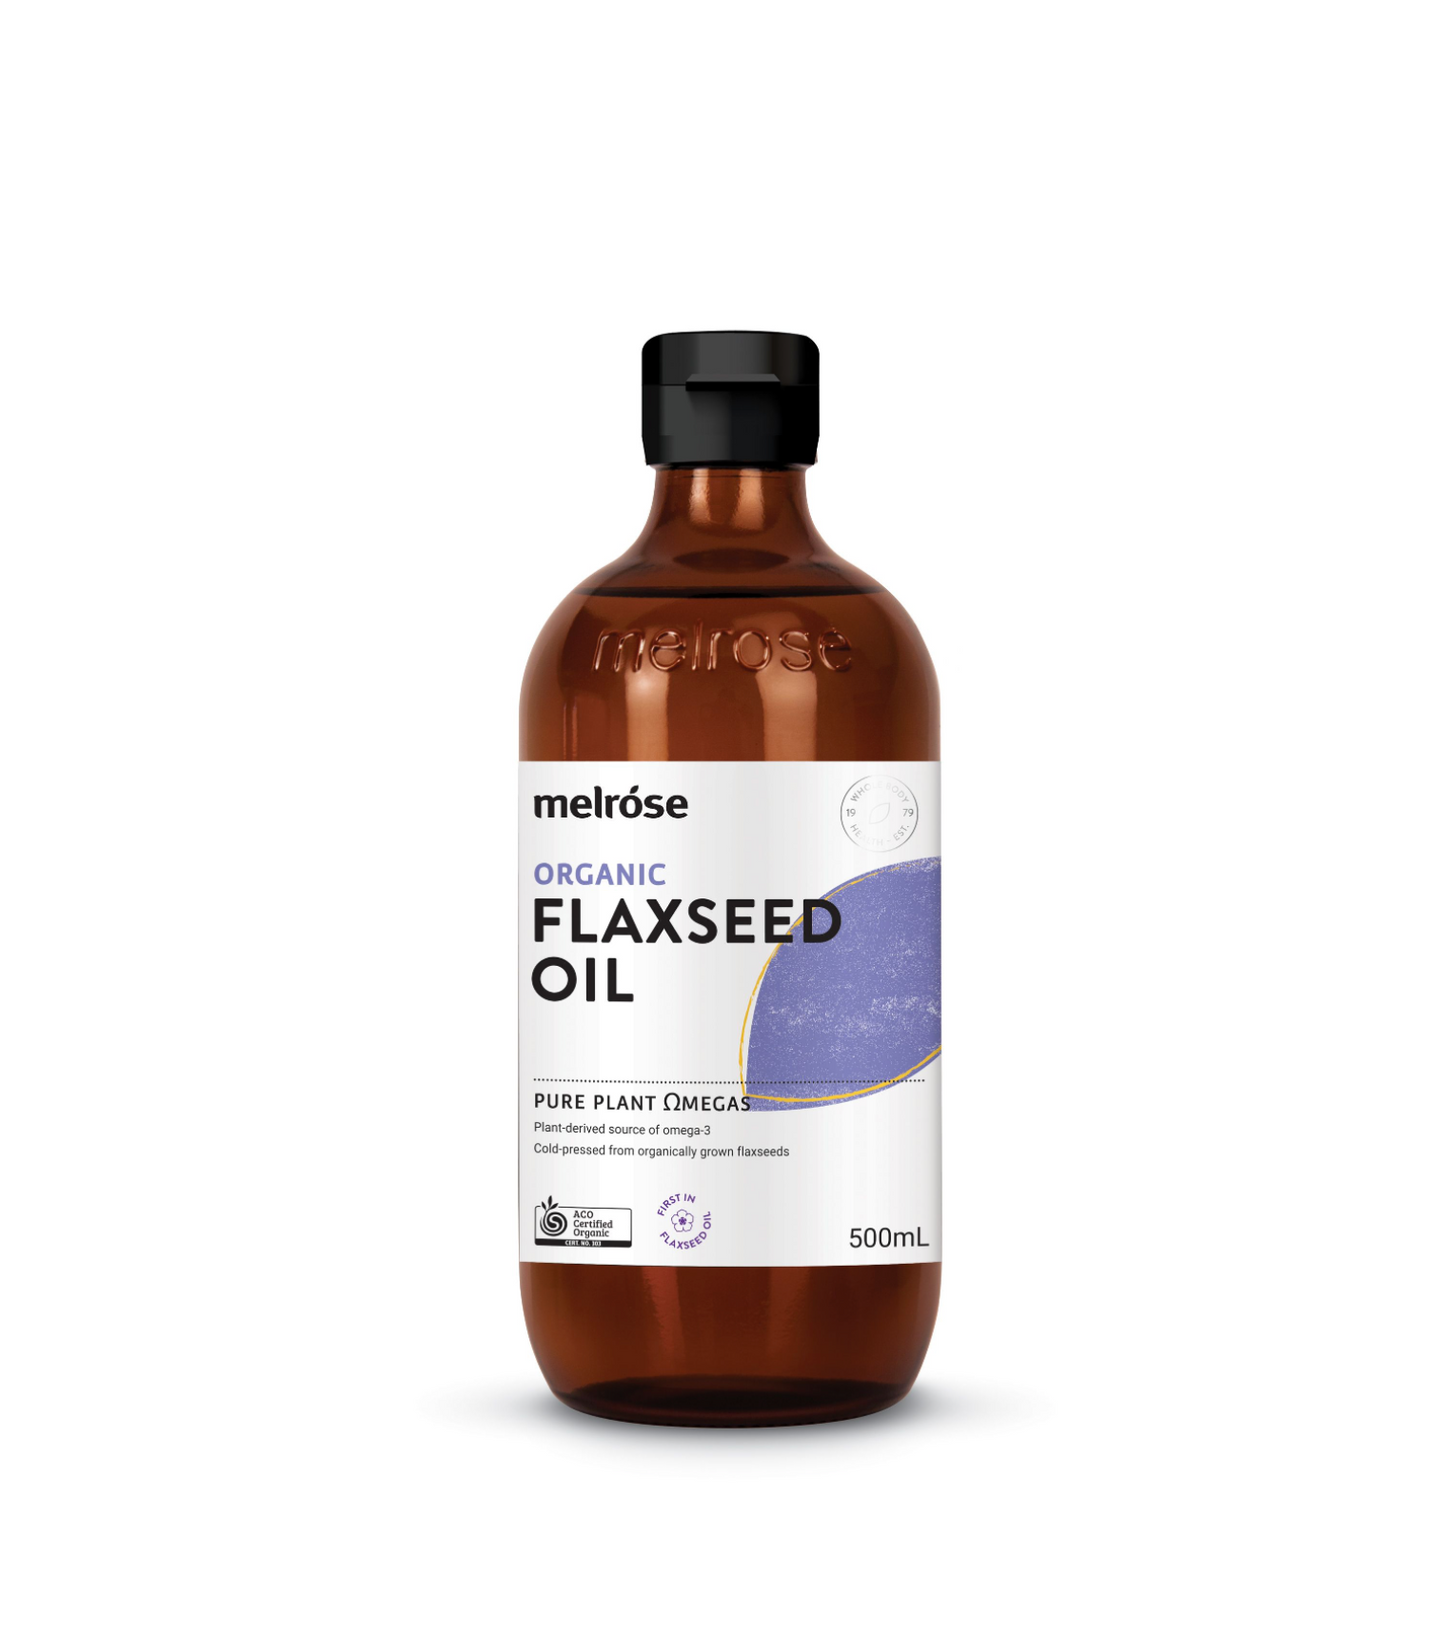 Melrose Organic Flaxseed Oil 200ml Or 500ml, Certified Organic